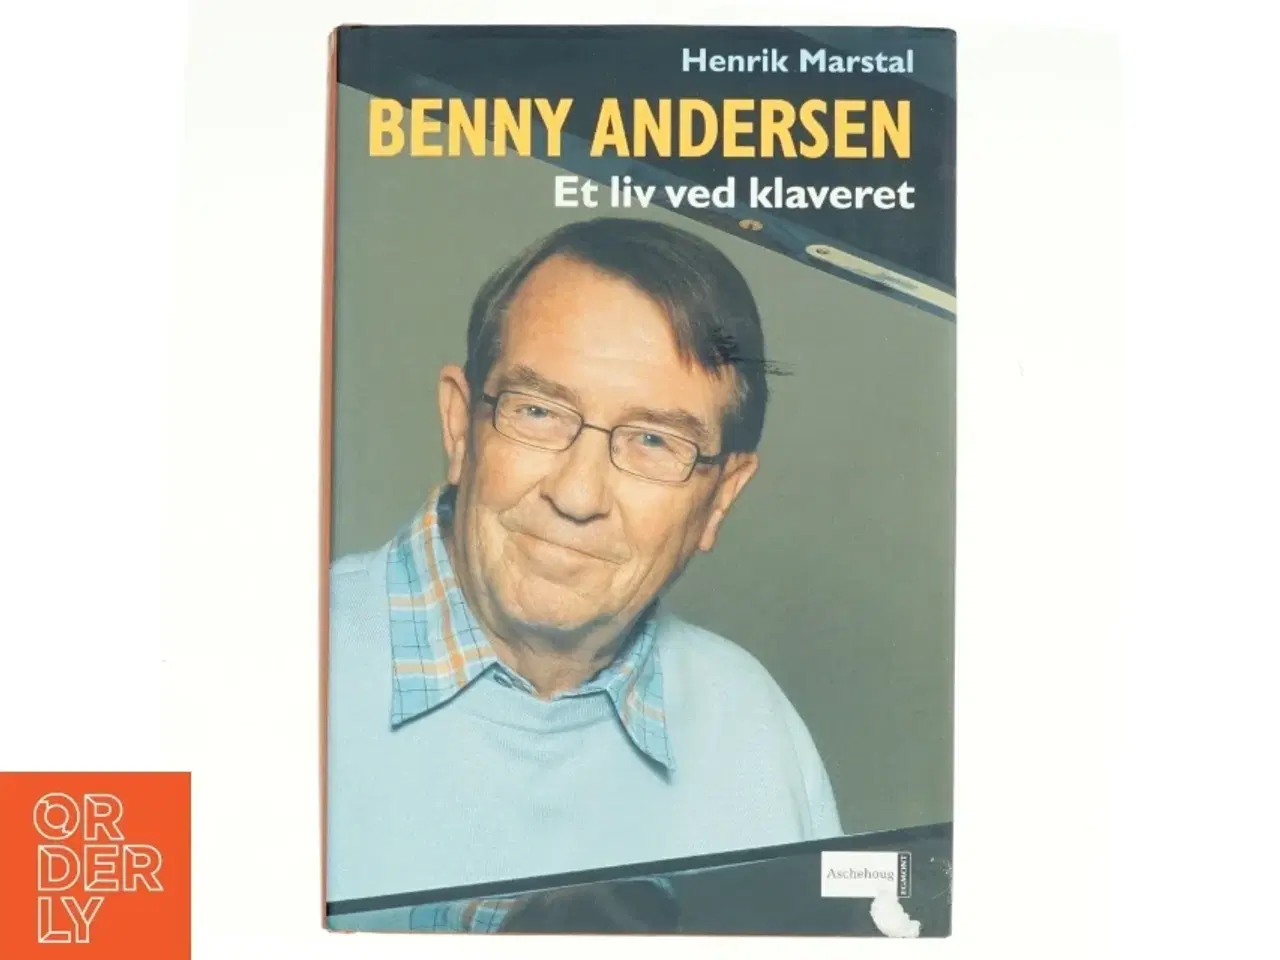 Billede 1 - Benny Andersen - et liv ved klaveret af Henrik Marstal (Bog)